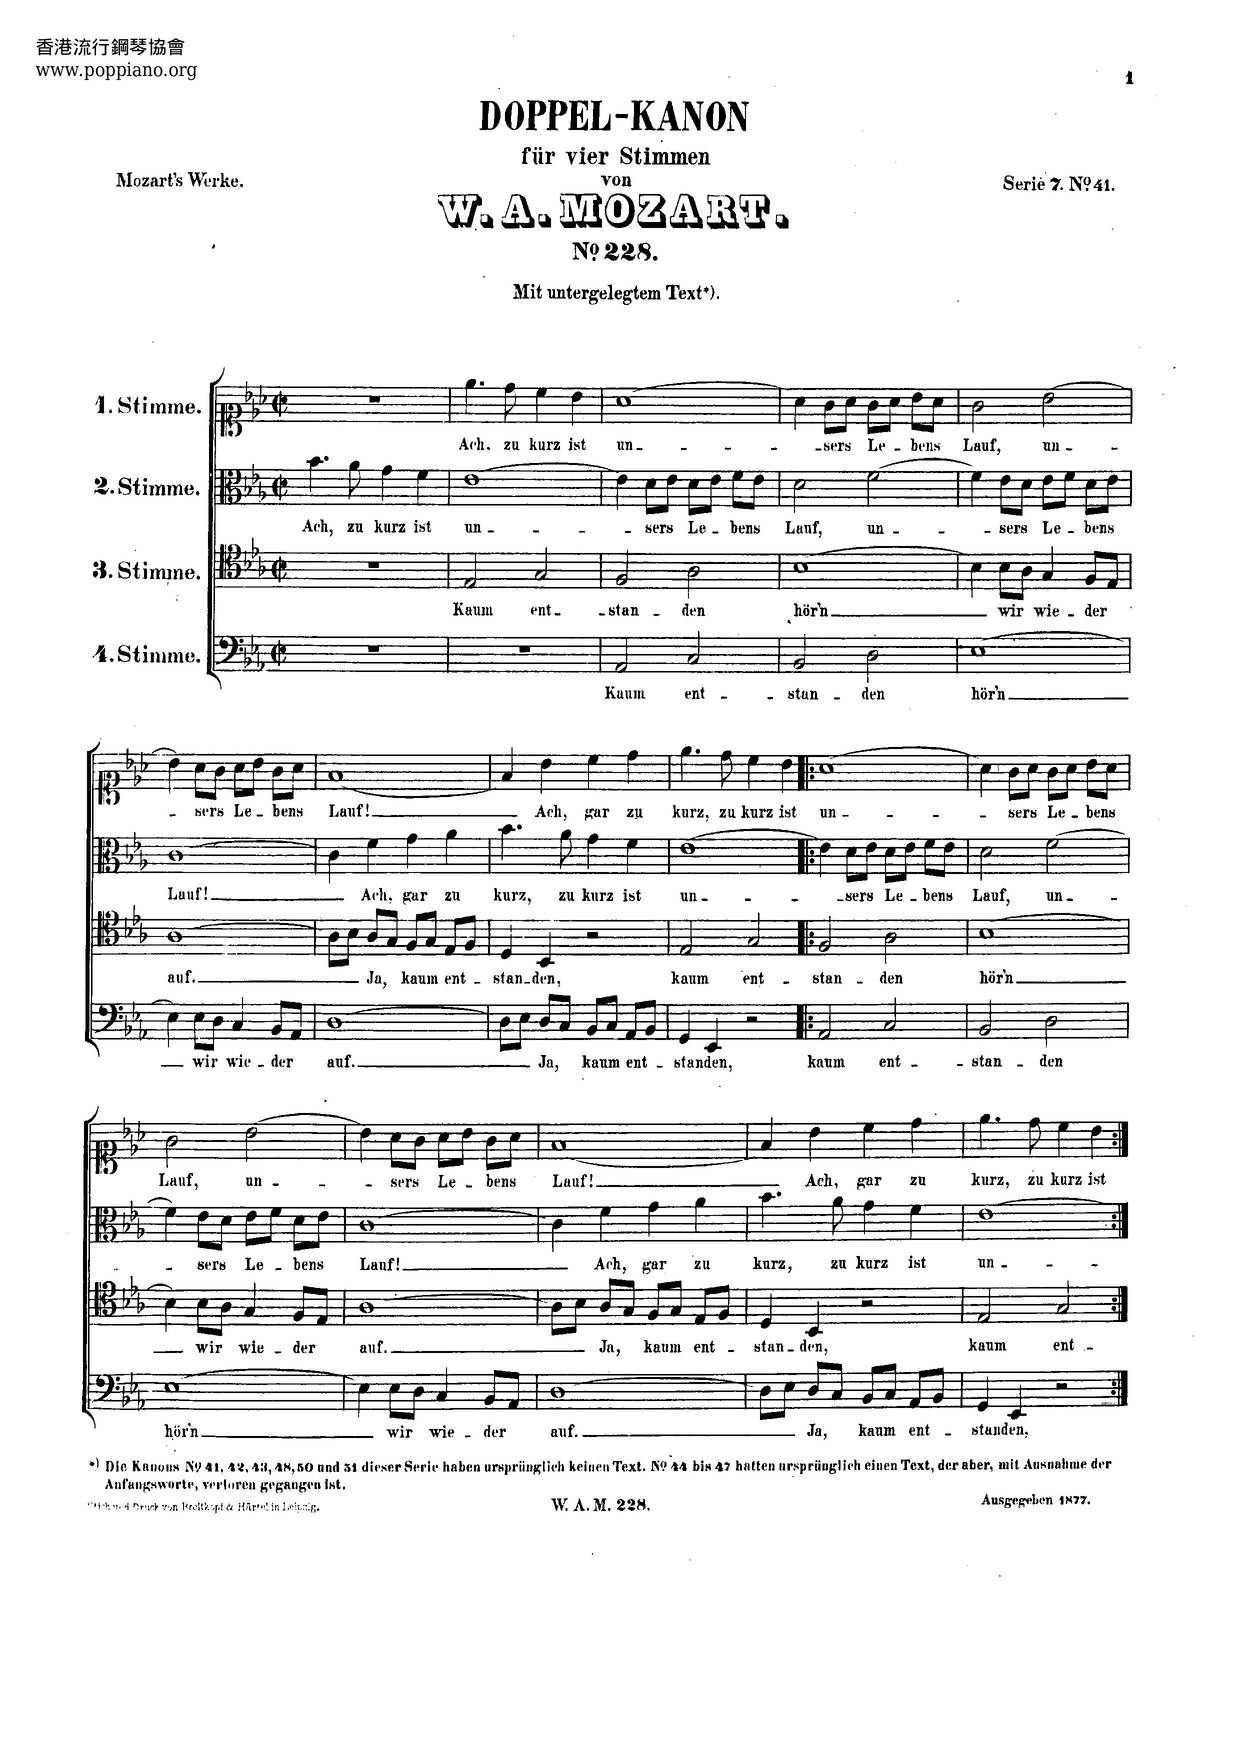 Double Canon For 4 Voices, K. 228/515B Score